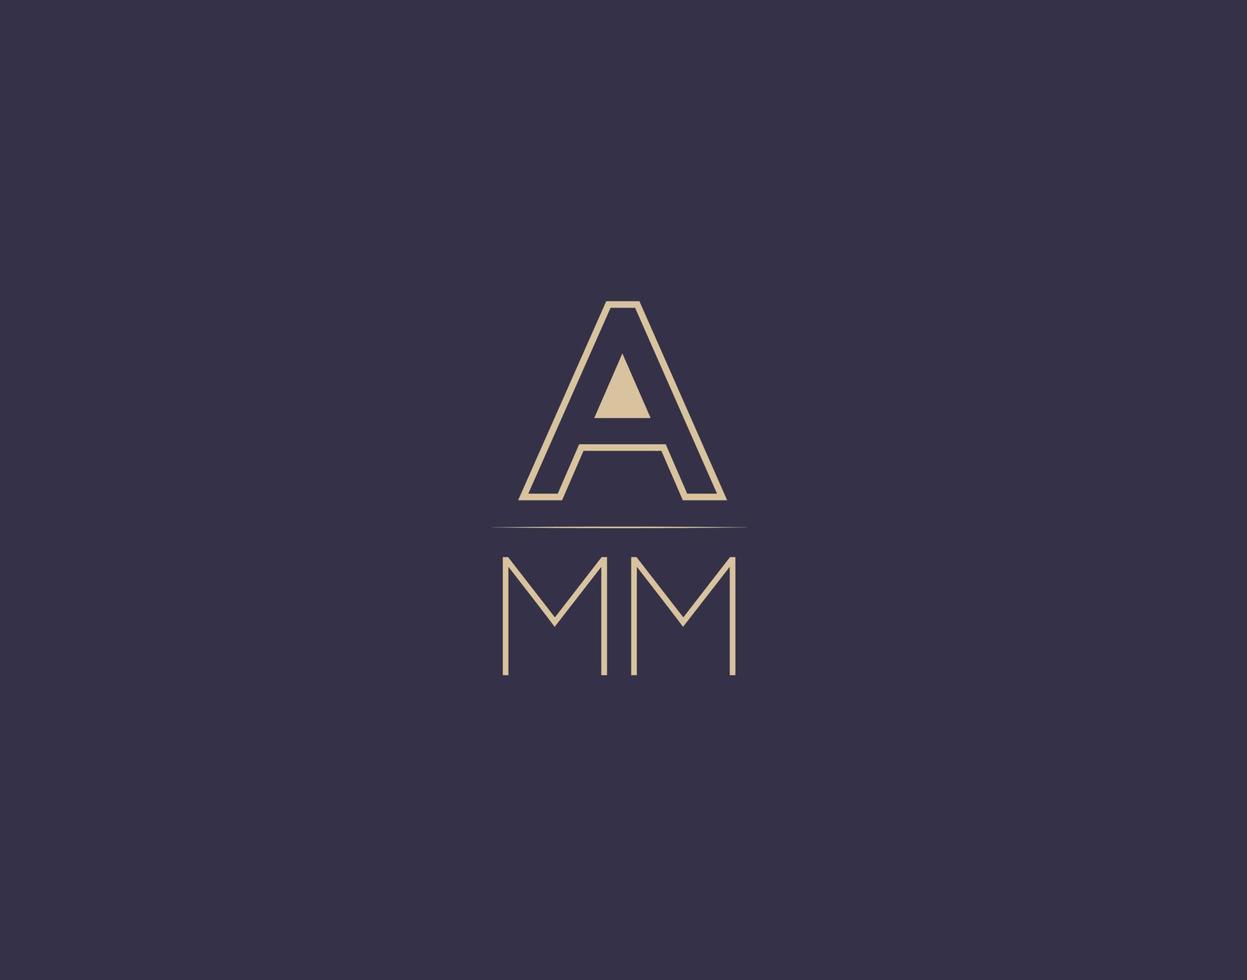 AMM letter logo design modern minimalist vector images